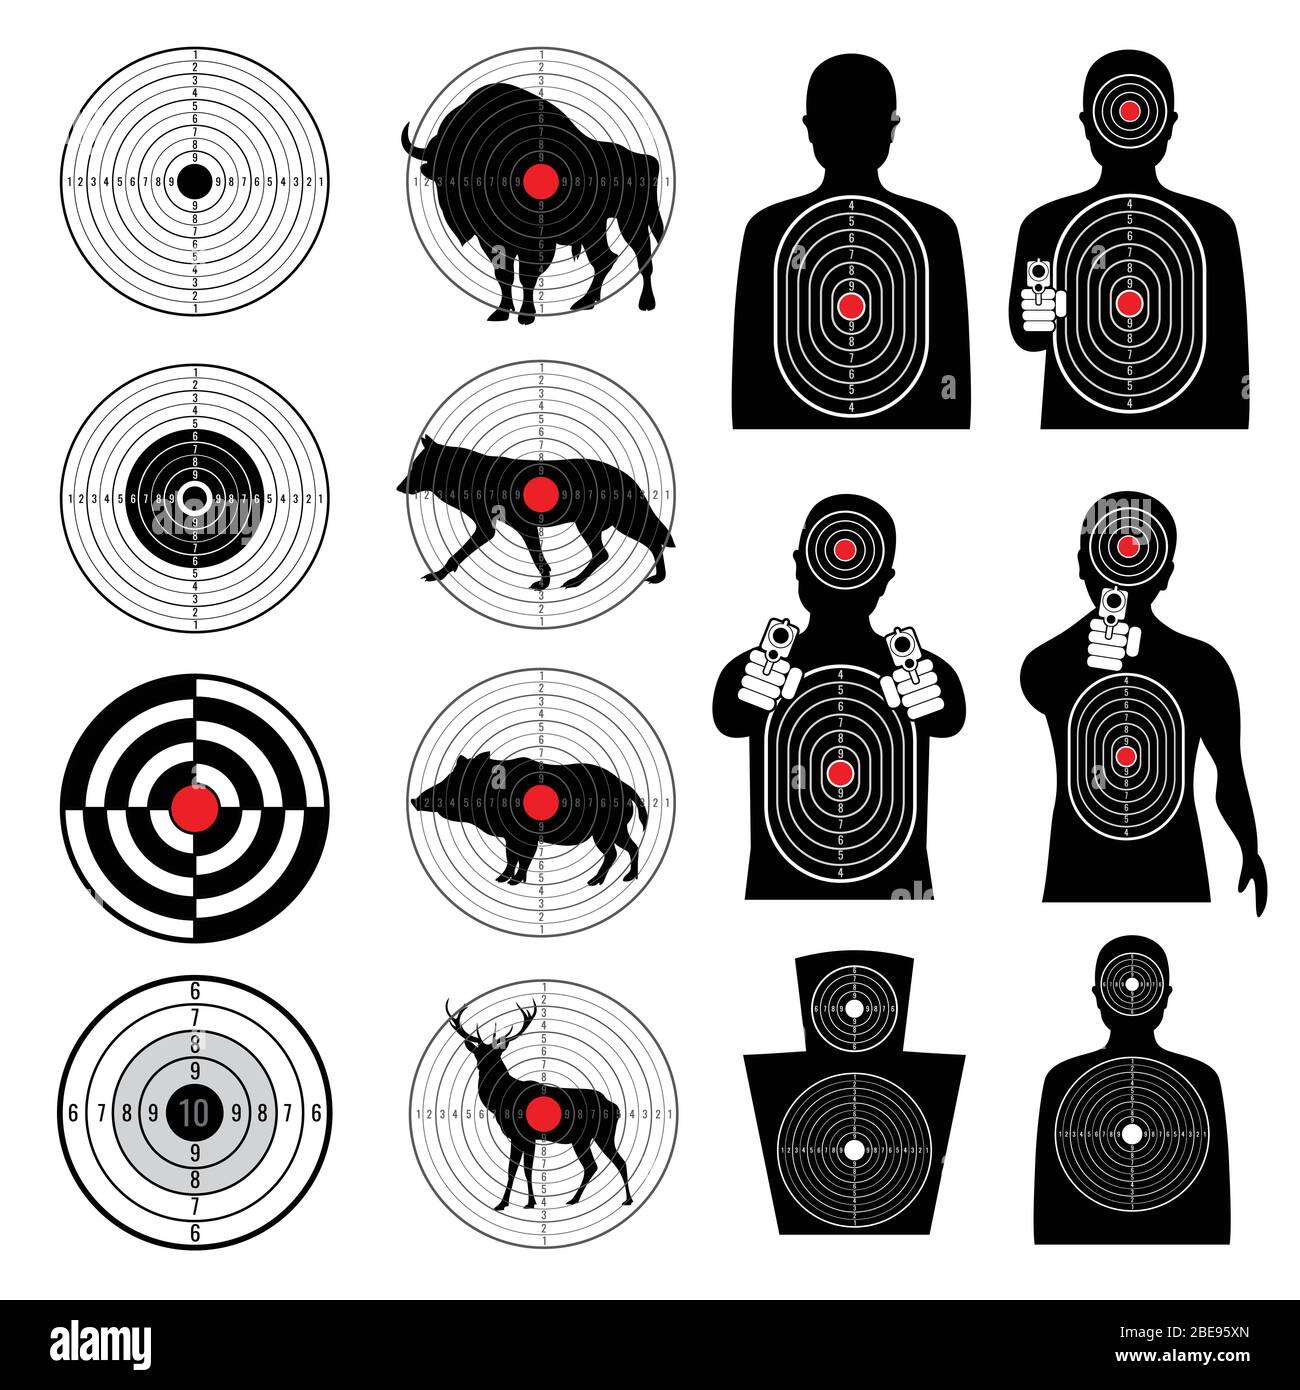 Pistole schießen Ziele und Ziel Silhouetten Vektor-Sammlung. Ziel und Ziel, Ziel für Scharfschützen, Bullseye runden Ziel Illustration Stock Vektor